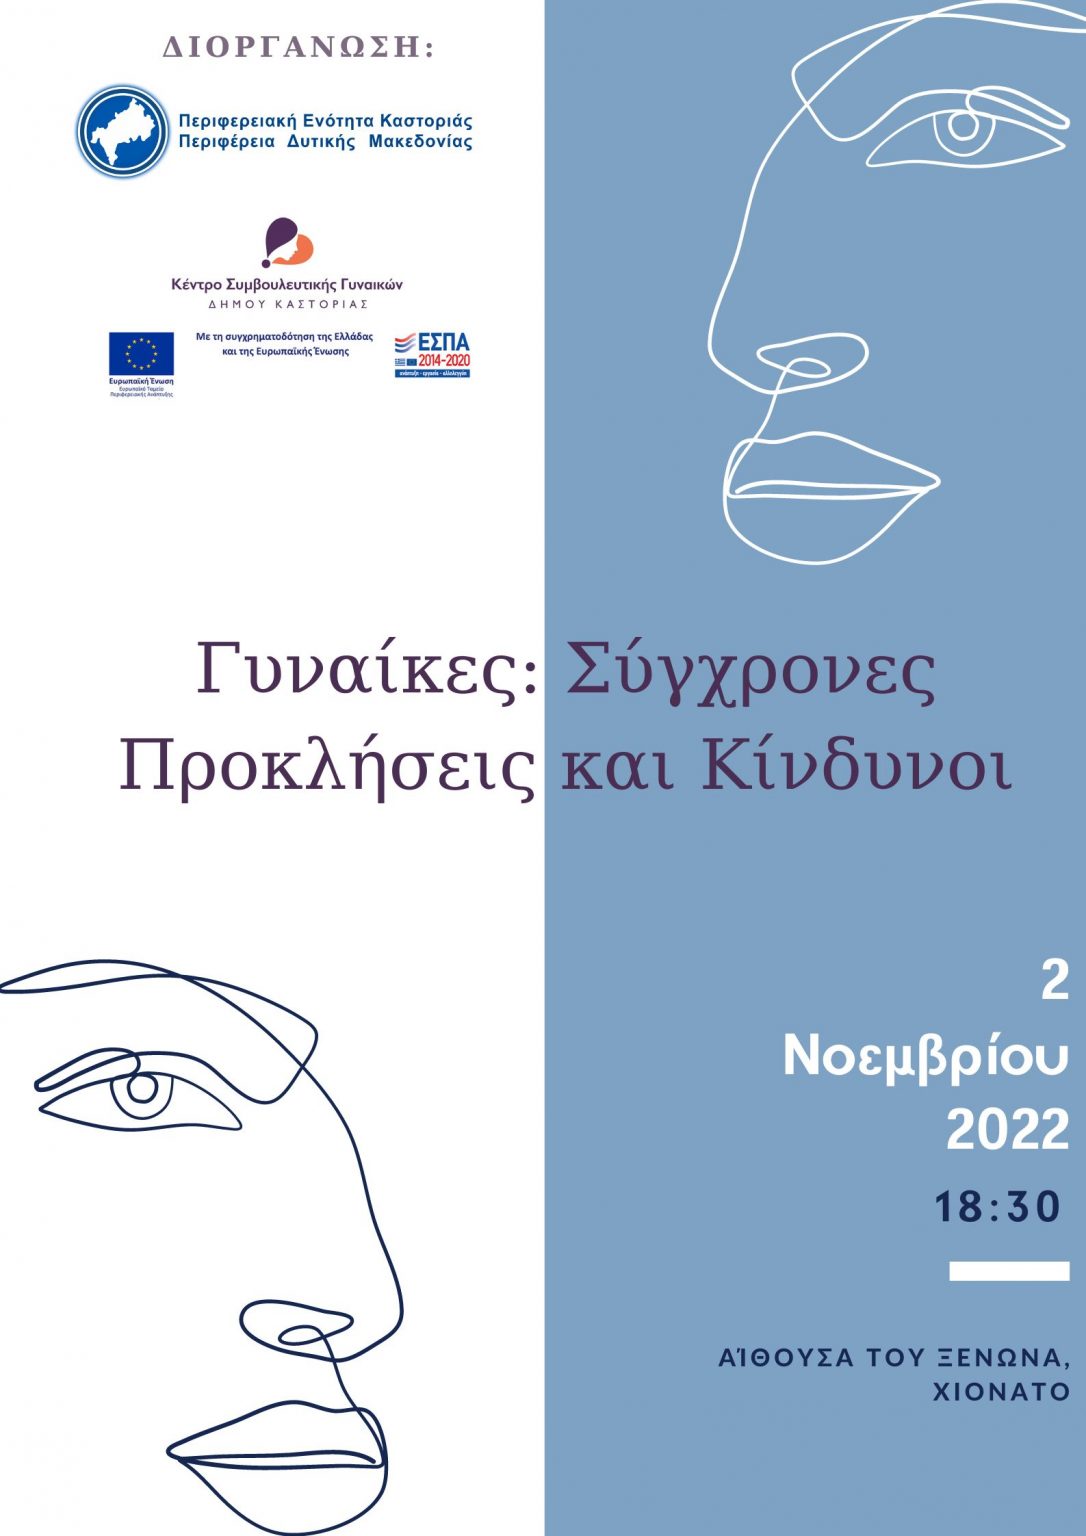 Π.Ε. Καστοριάς- Κέντρο Συμβουλευτικής Γυναικών Δήμου Καστοριάς, Ομιλία με θέμα: Γυναίκα-Σύγχρονες Προκλήσεις και Κίνδυνοι